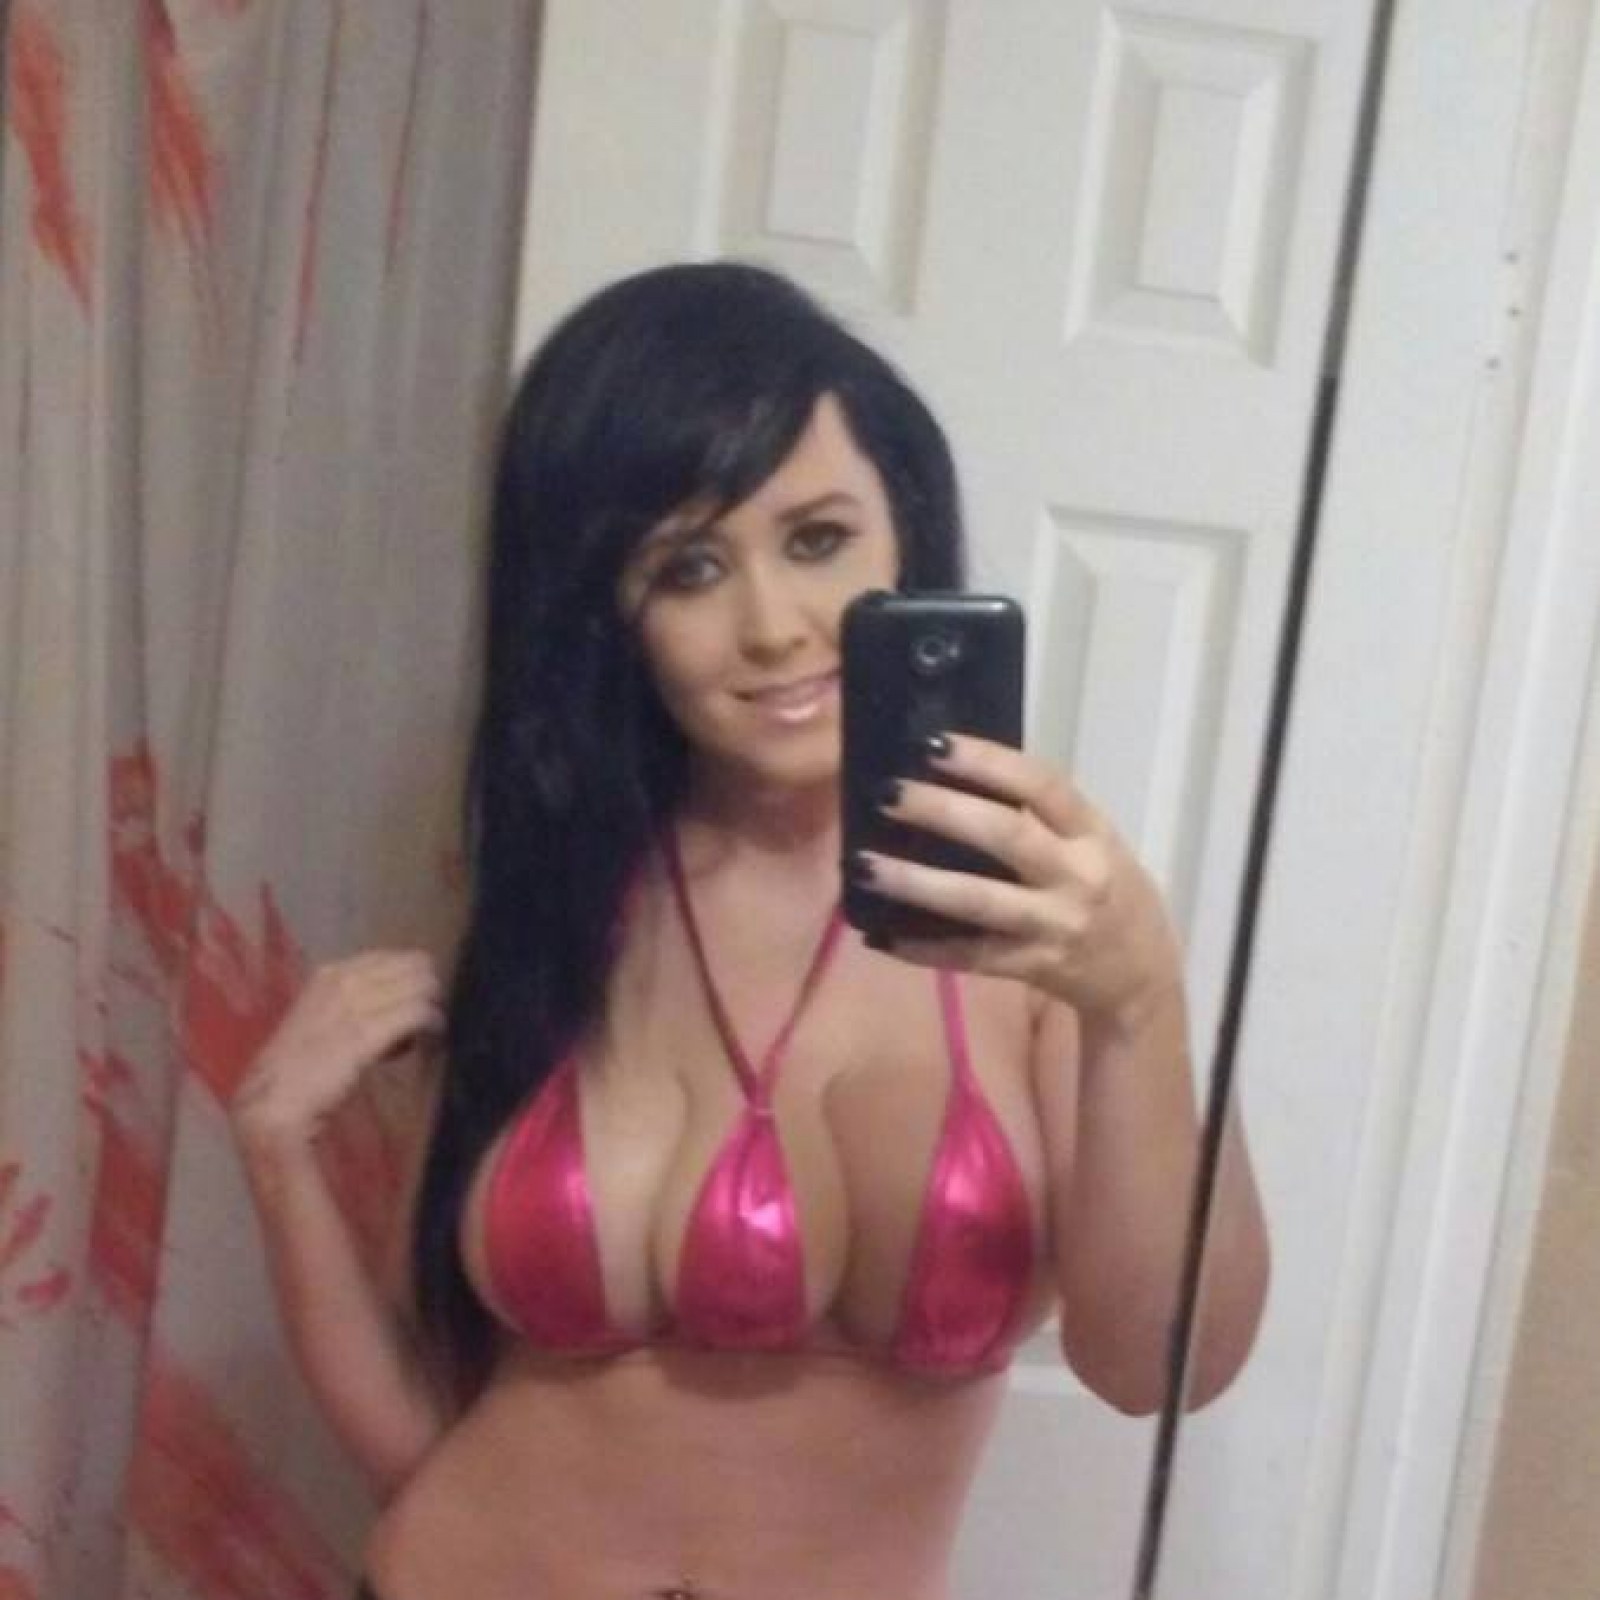 Jasmine Tridevil: Plastic Surgeon Claims 'Three Breasted Woman is